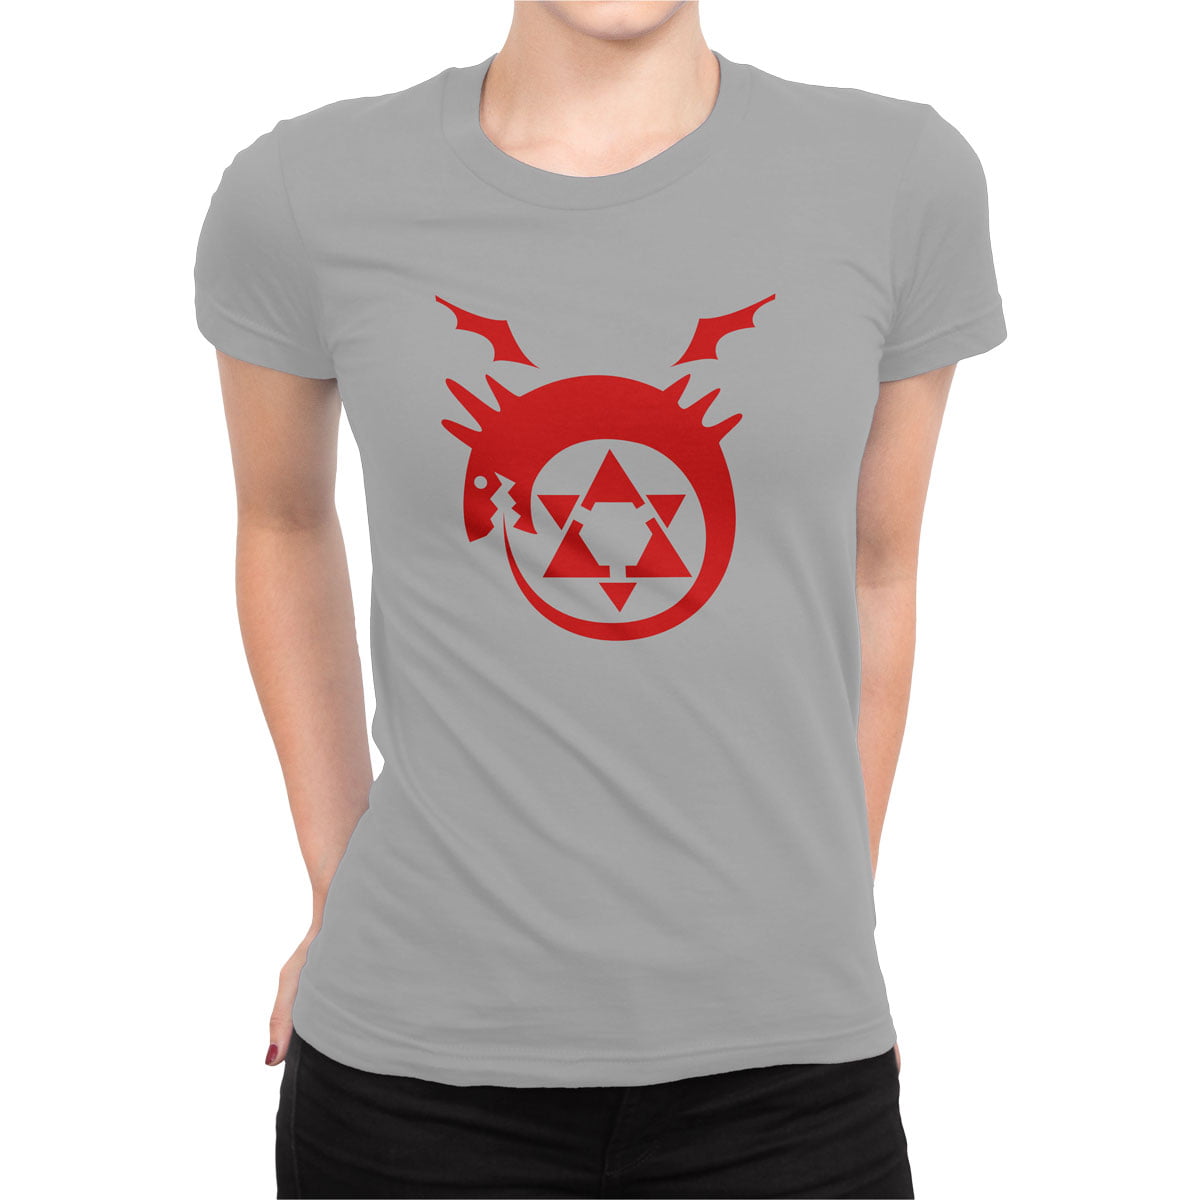 Fma logo tisort kadin g - fullmetal alchemist kadın t-shirt - figurex